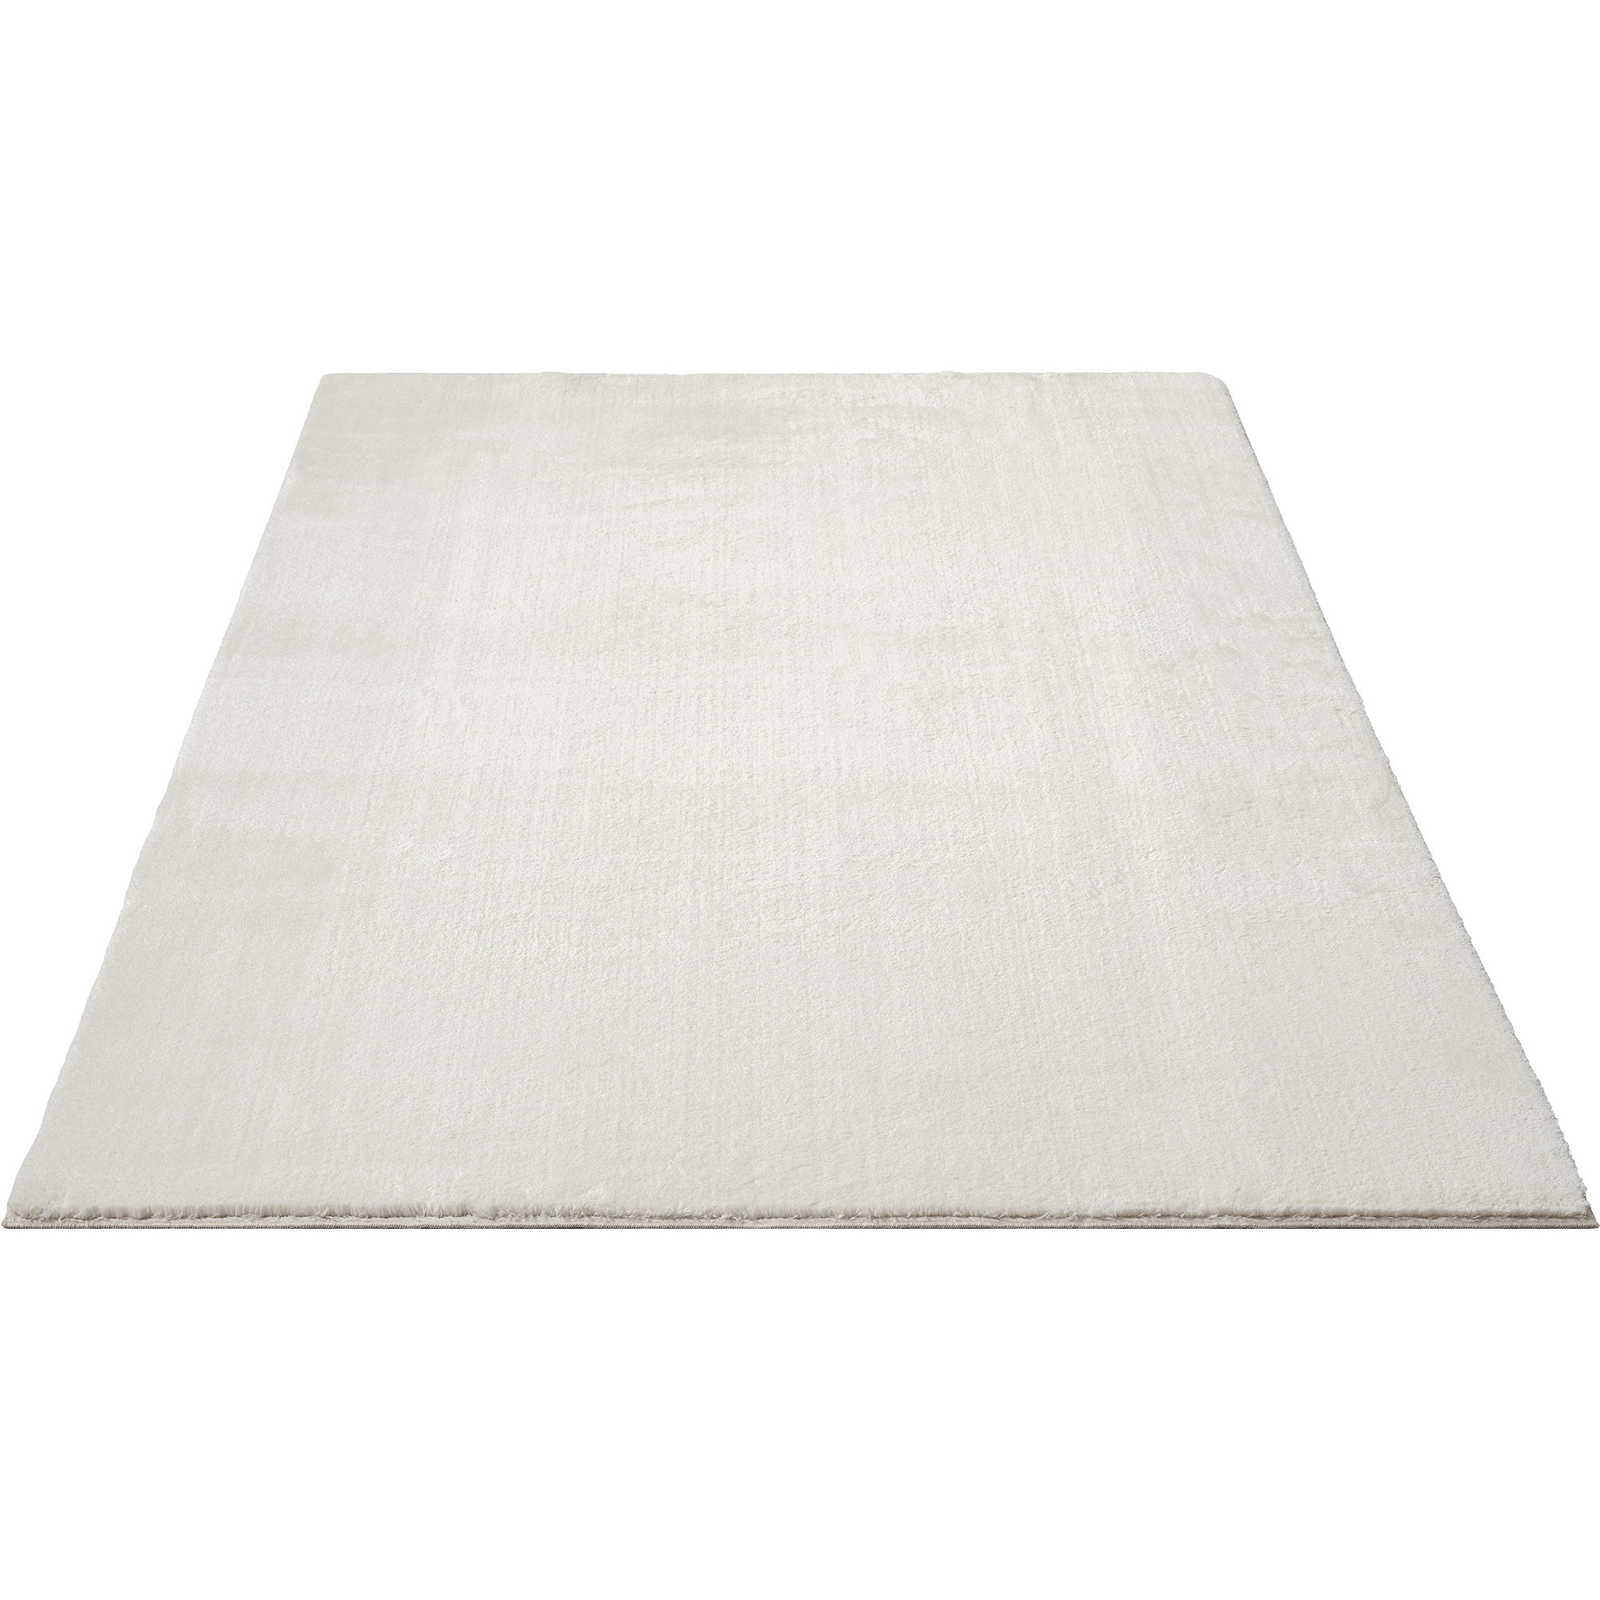 Fashionable high pile carpet in cream - 340 x 240 cm
